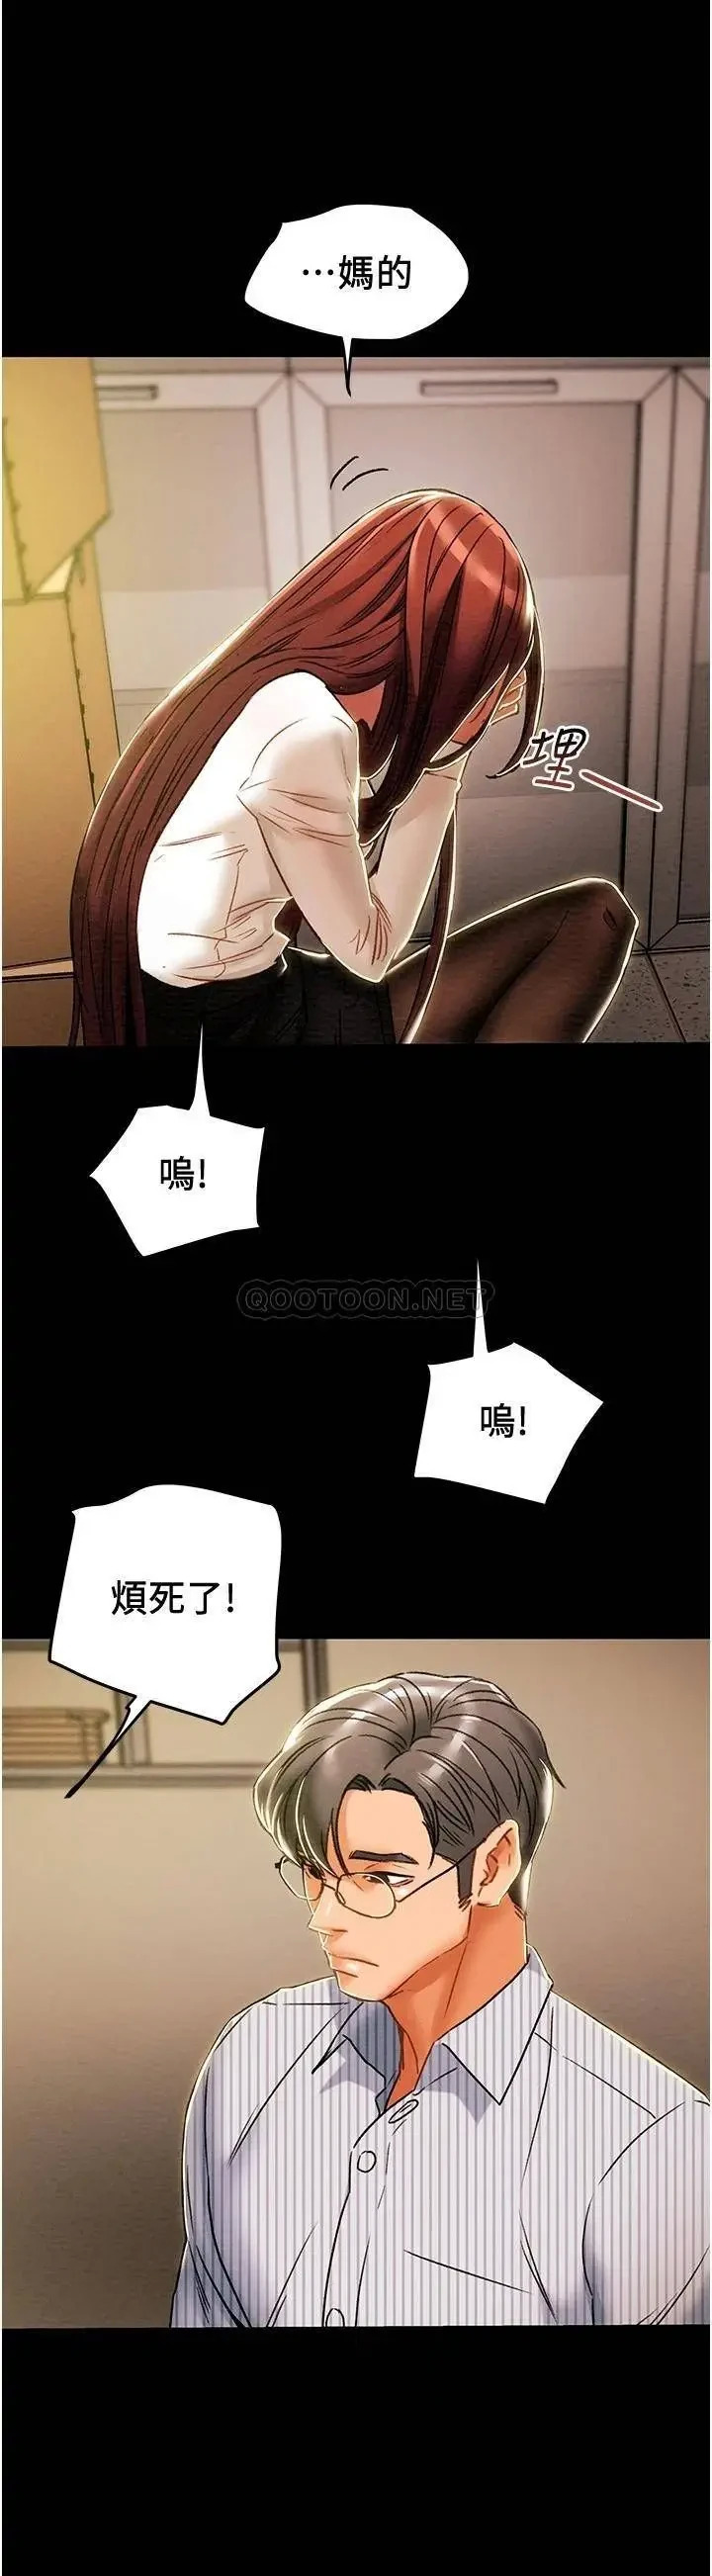 《纯情女攻略计划》漫画 第46话 妍霏的过去